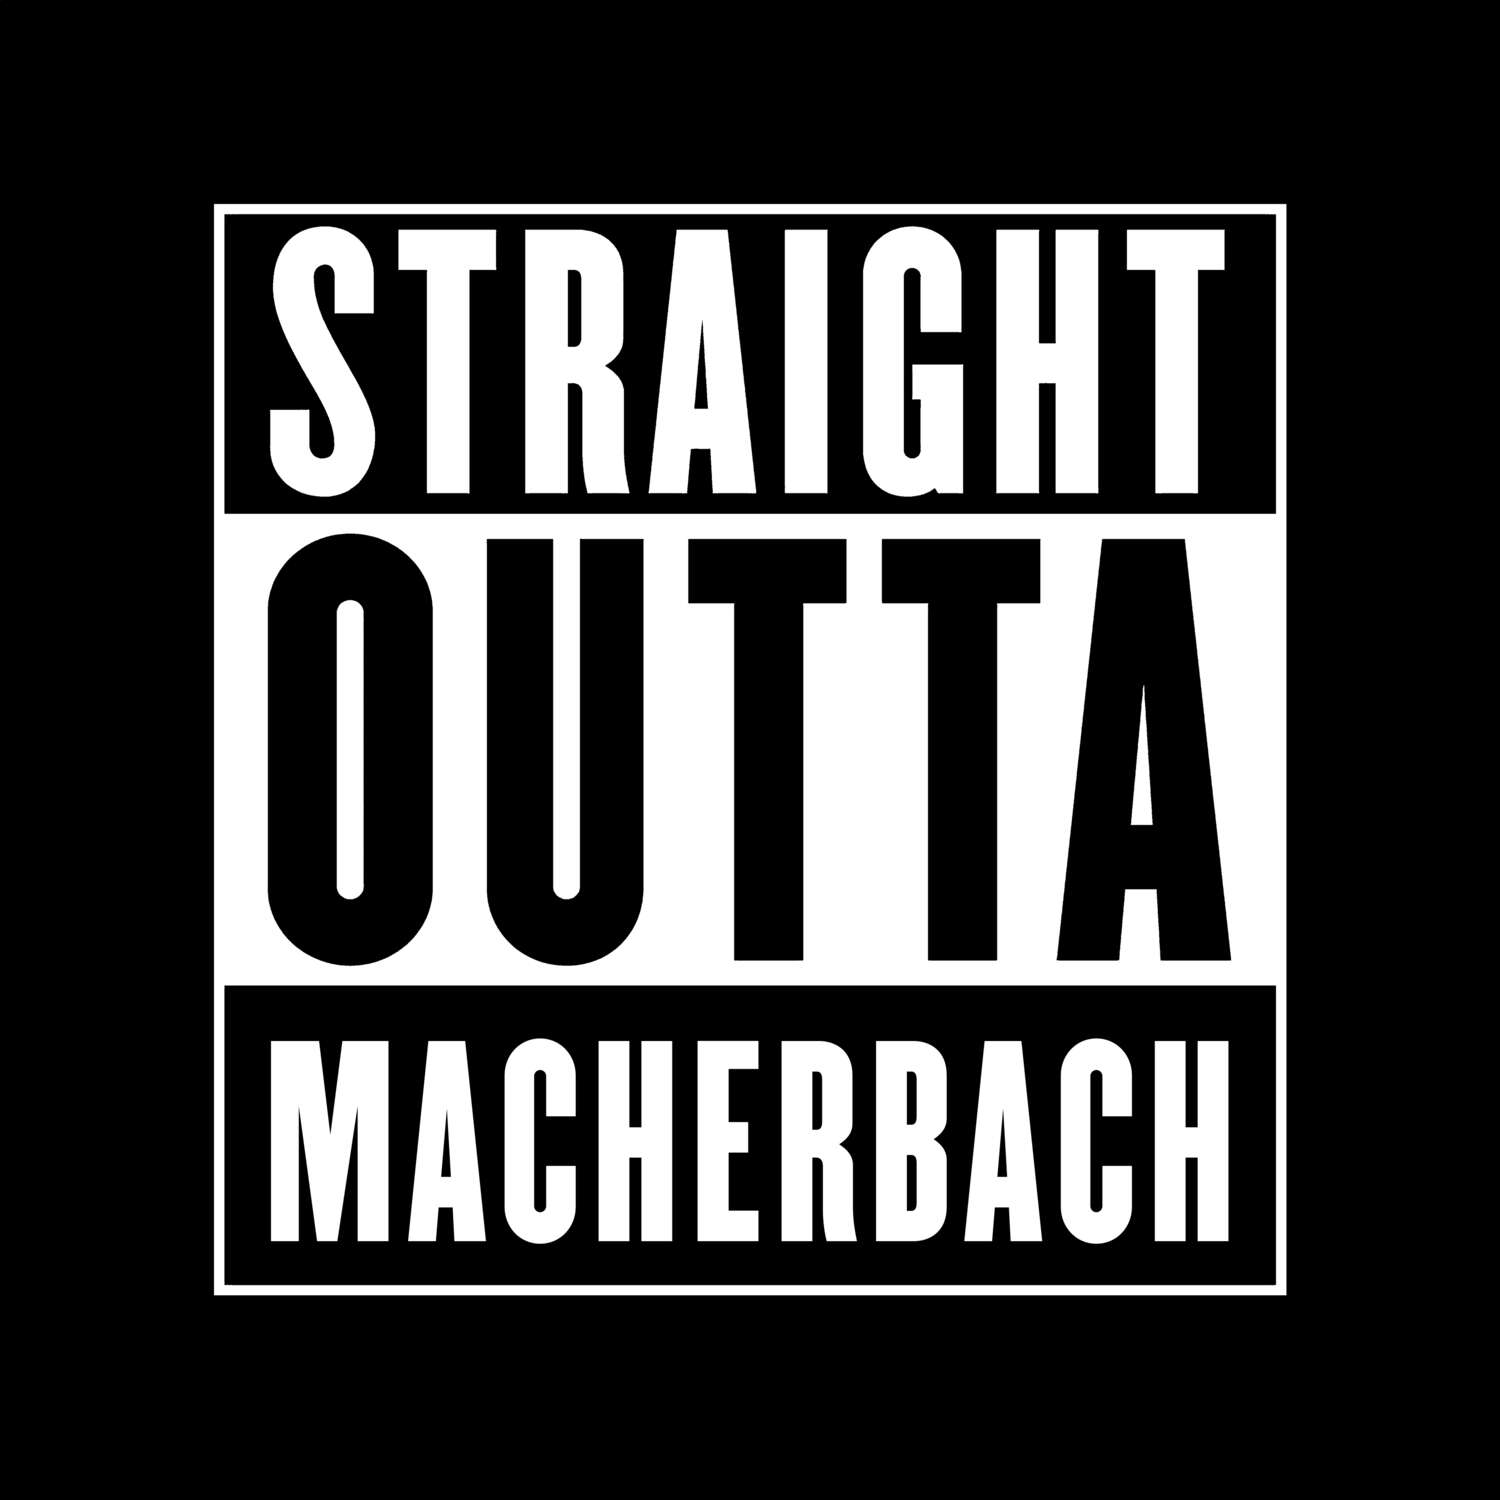 Macherbach T-Shirt »Straight Outta«